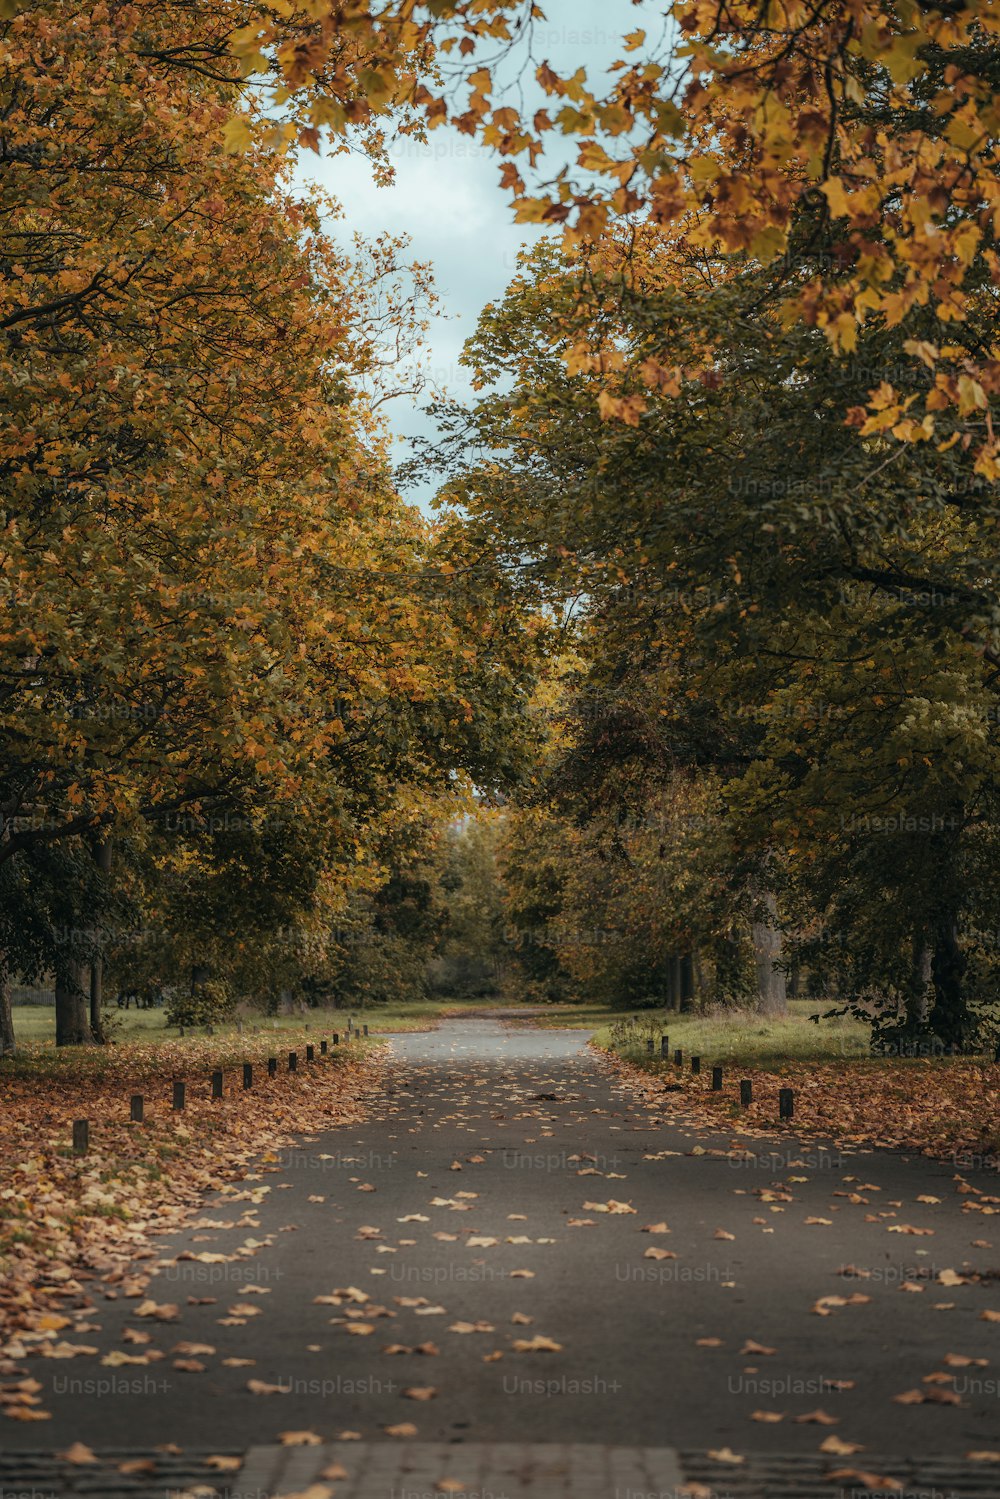 Un camino arbolado con muchas hojas en el suelo